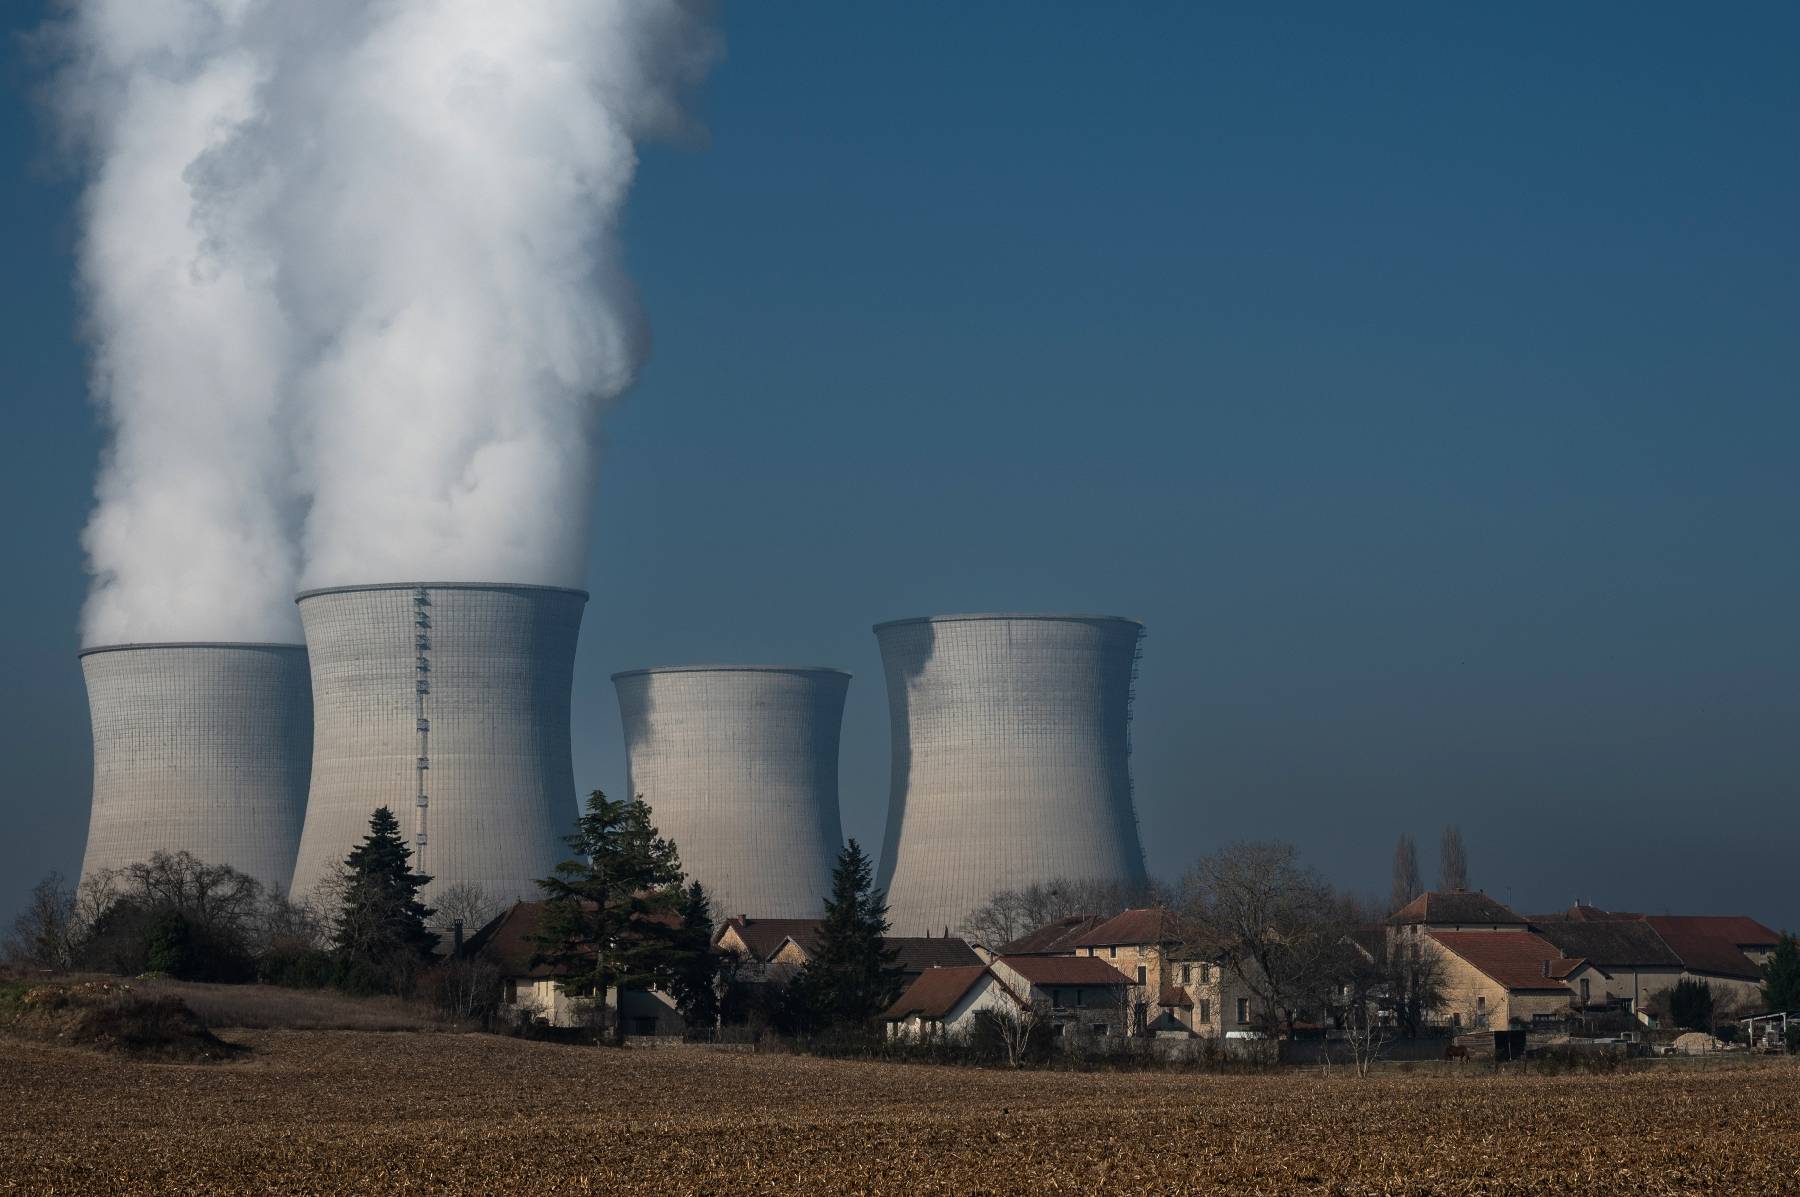 Nucléaire: EDF à l'orée d'une année encore compliquée